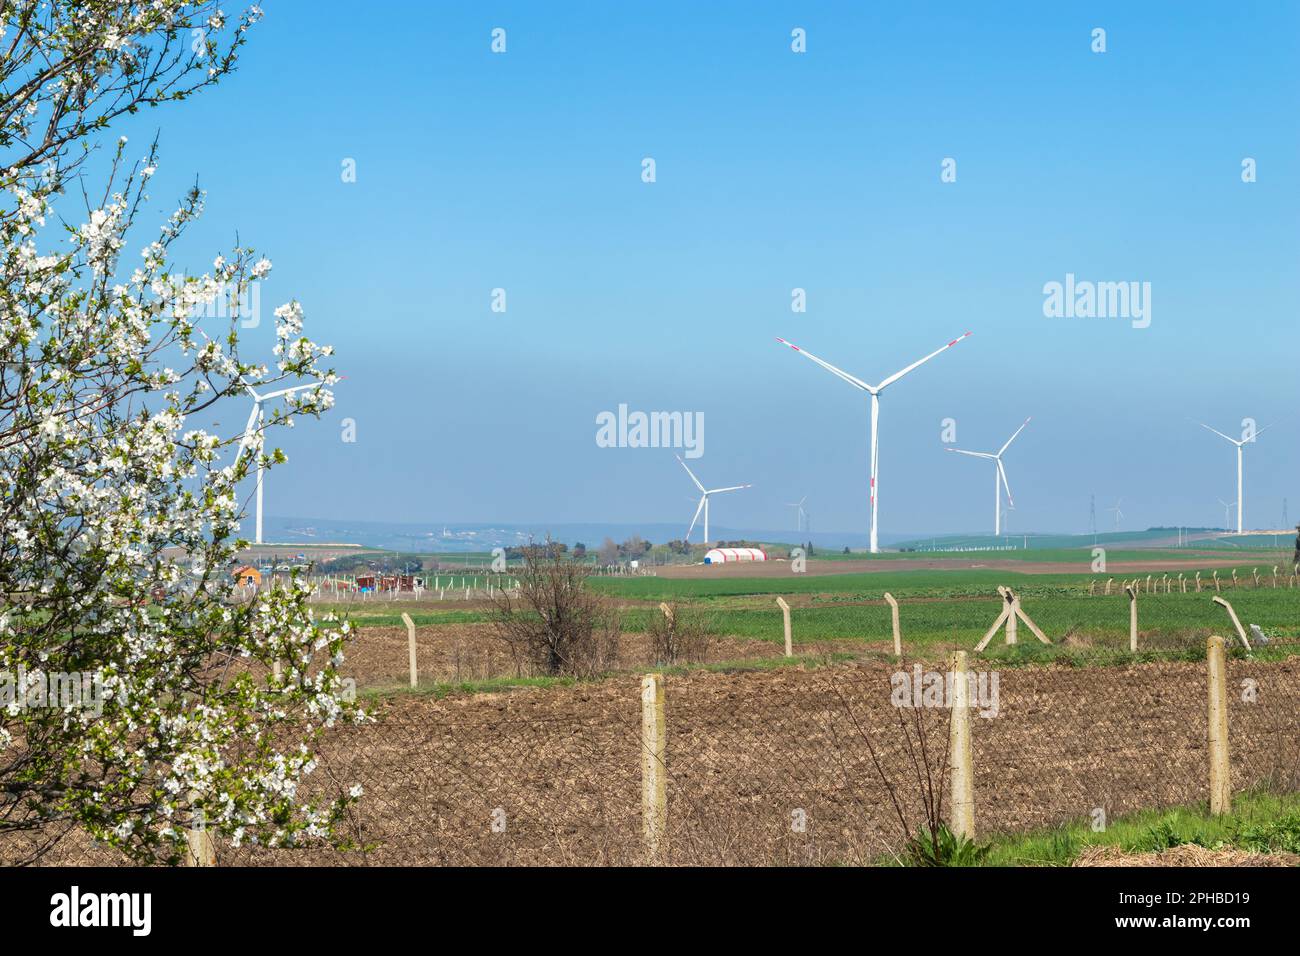 éoliennes générant de l'énergie du vent, dans la nature, ciel bleu clair Banque D'Images